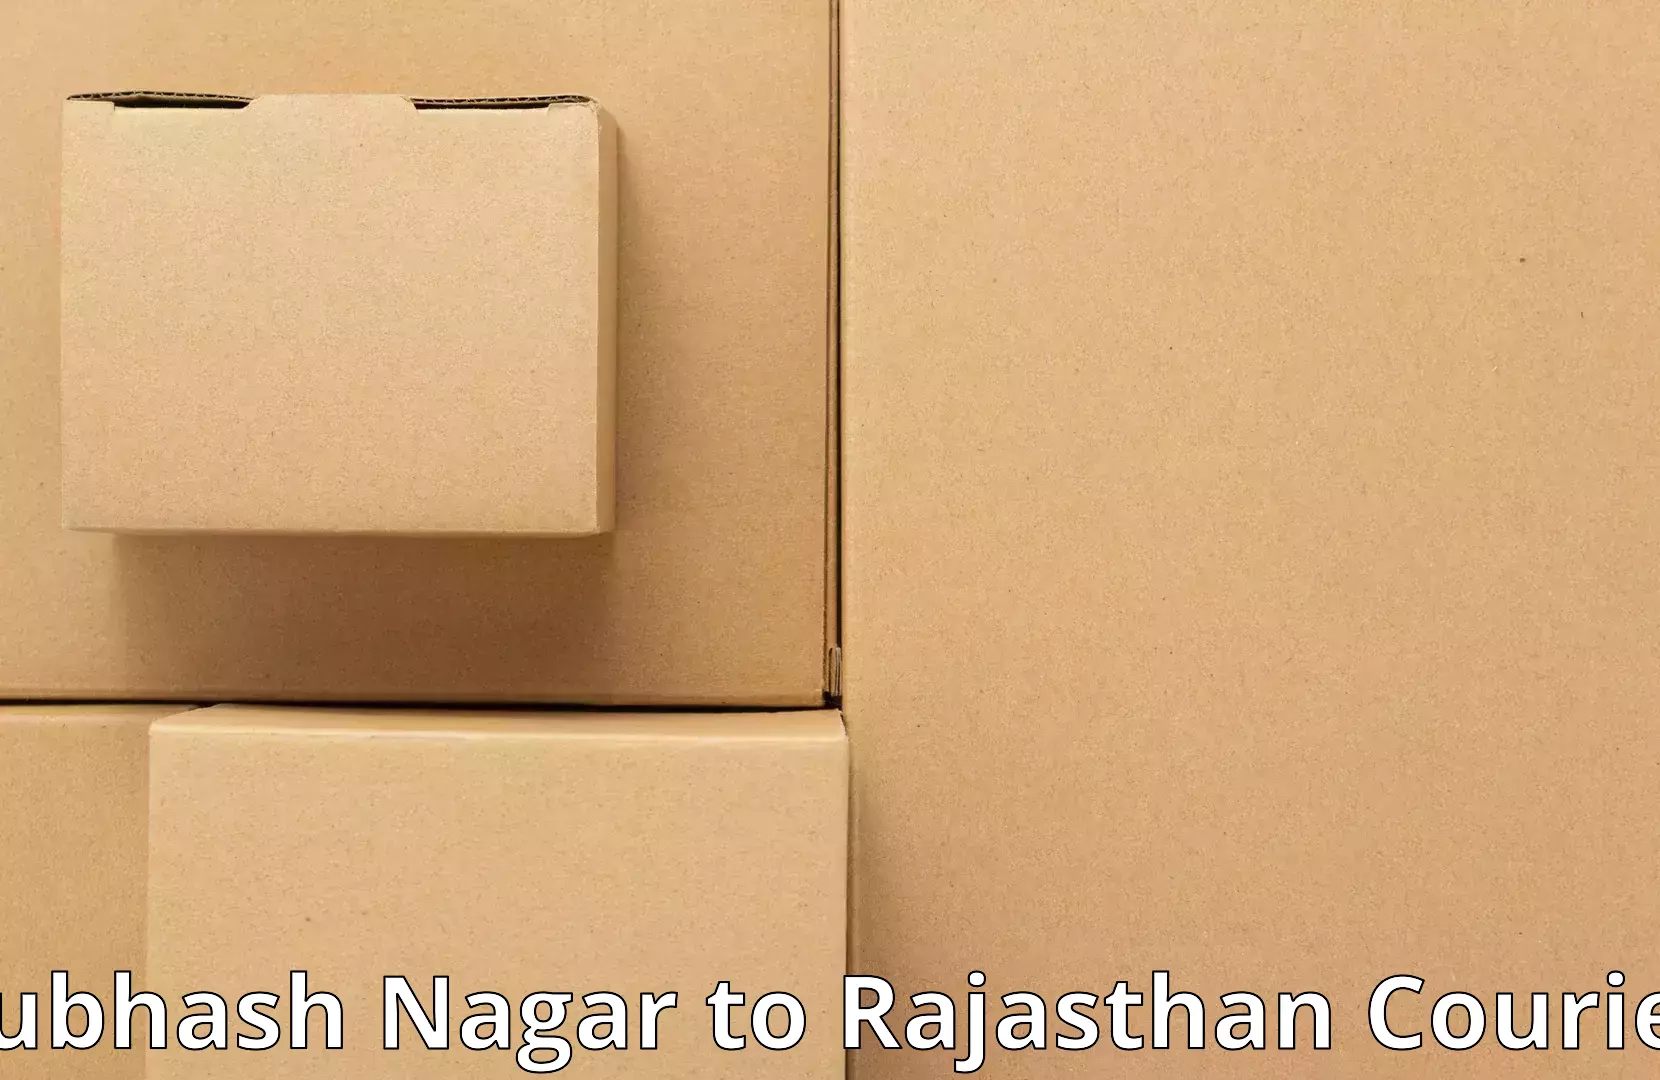 Household transport experts Subhash Nagar to Fatehpur Sikar